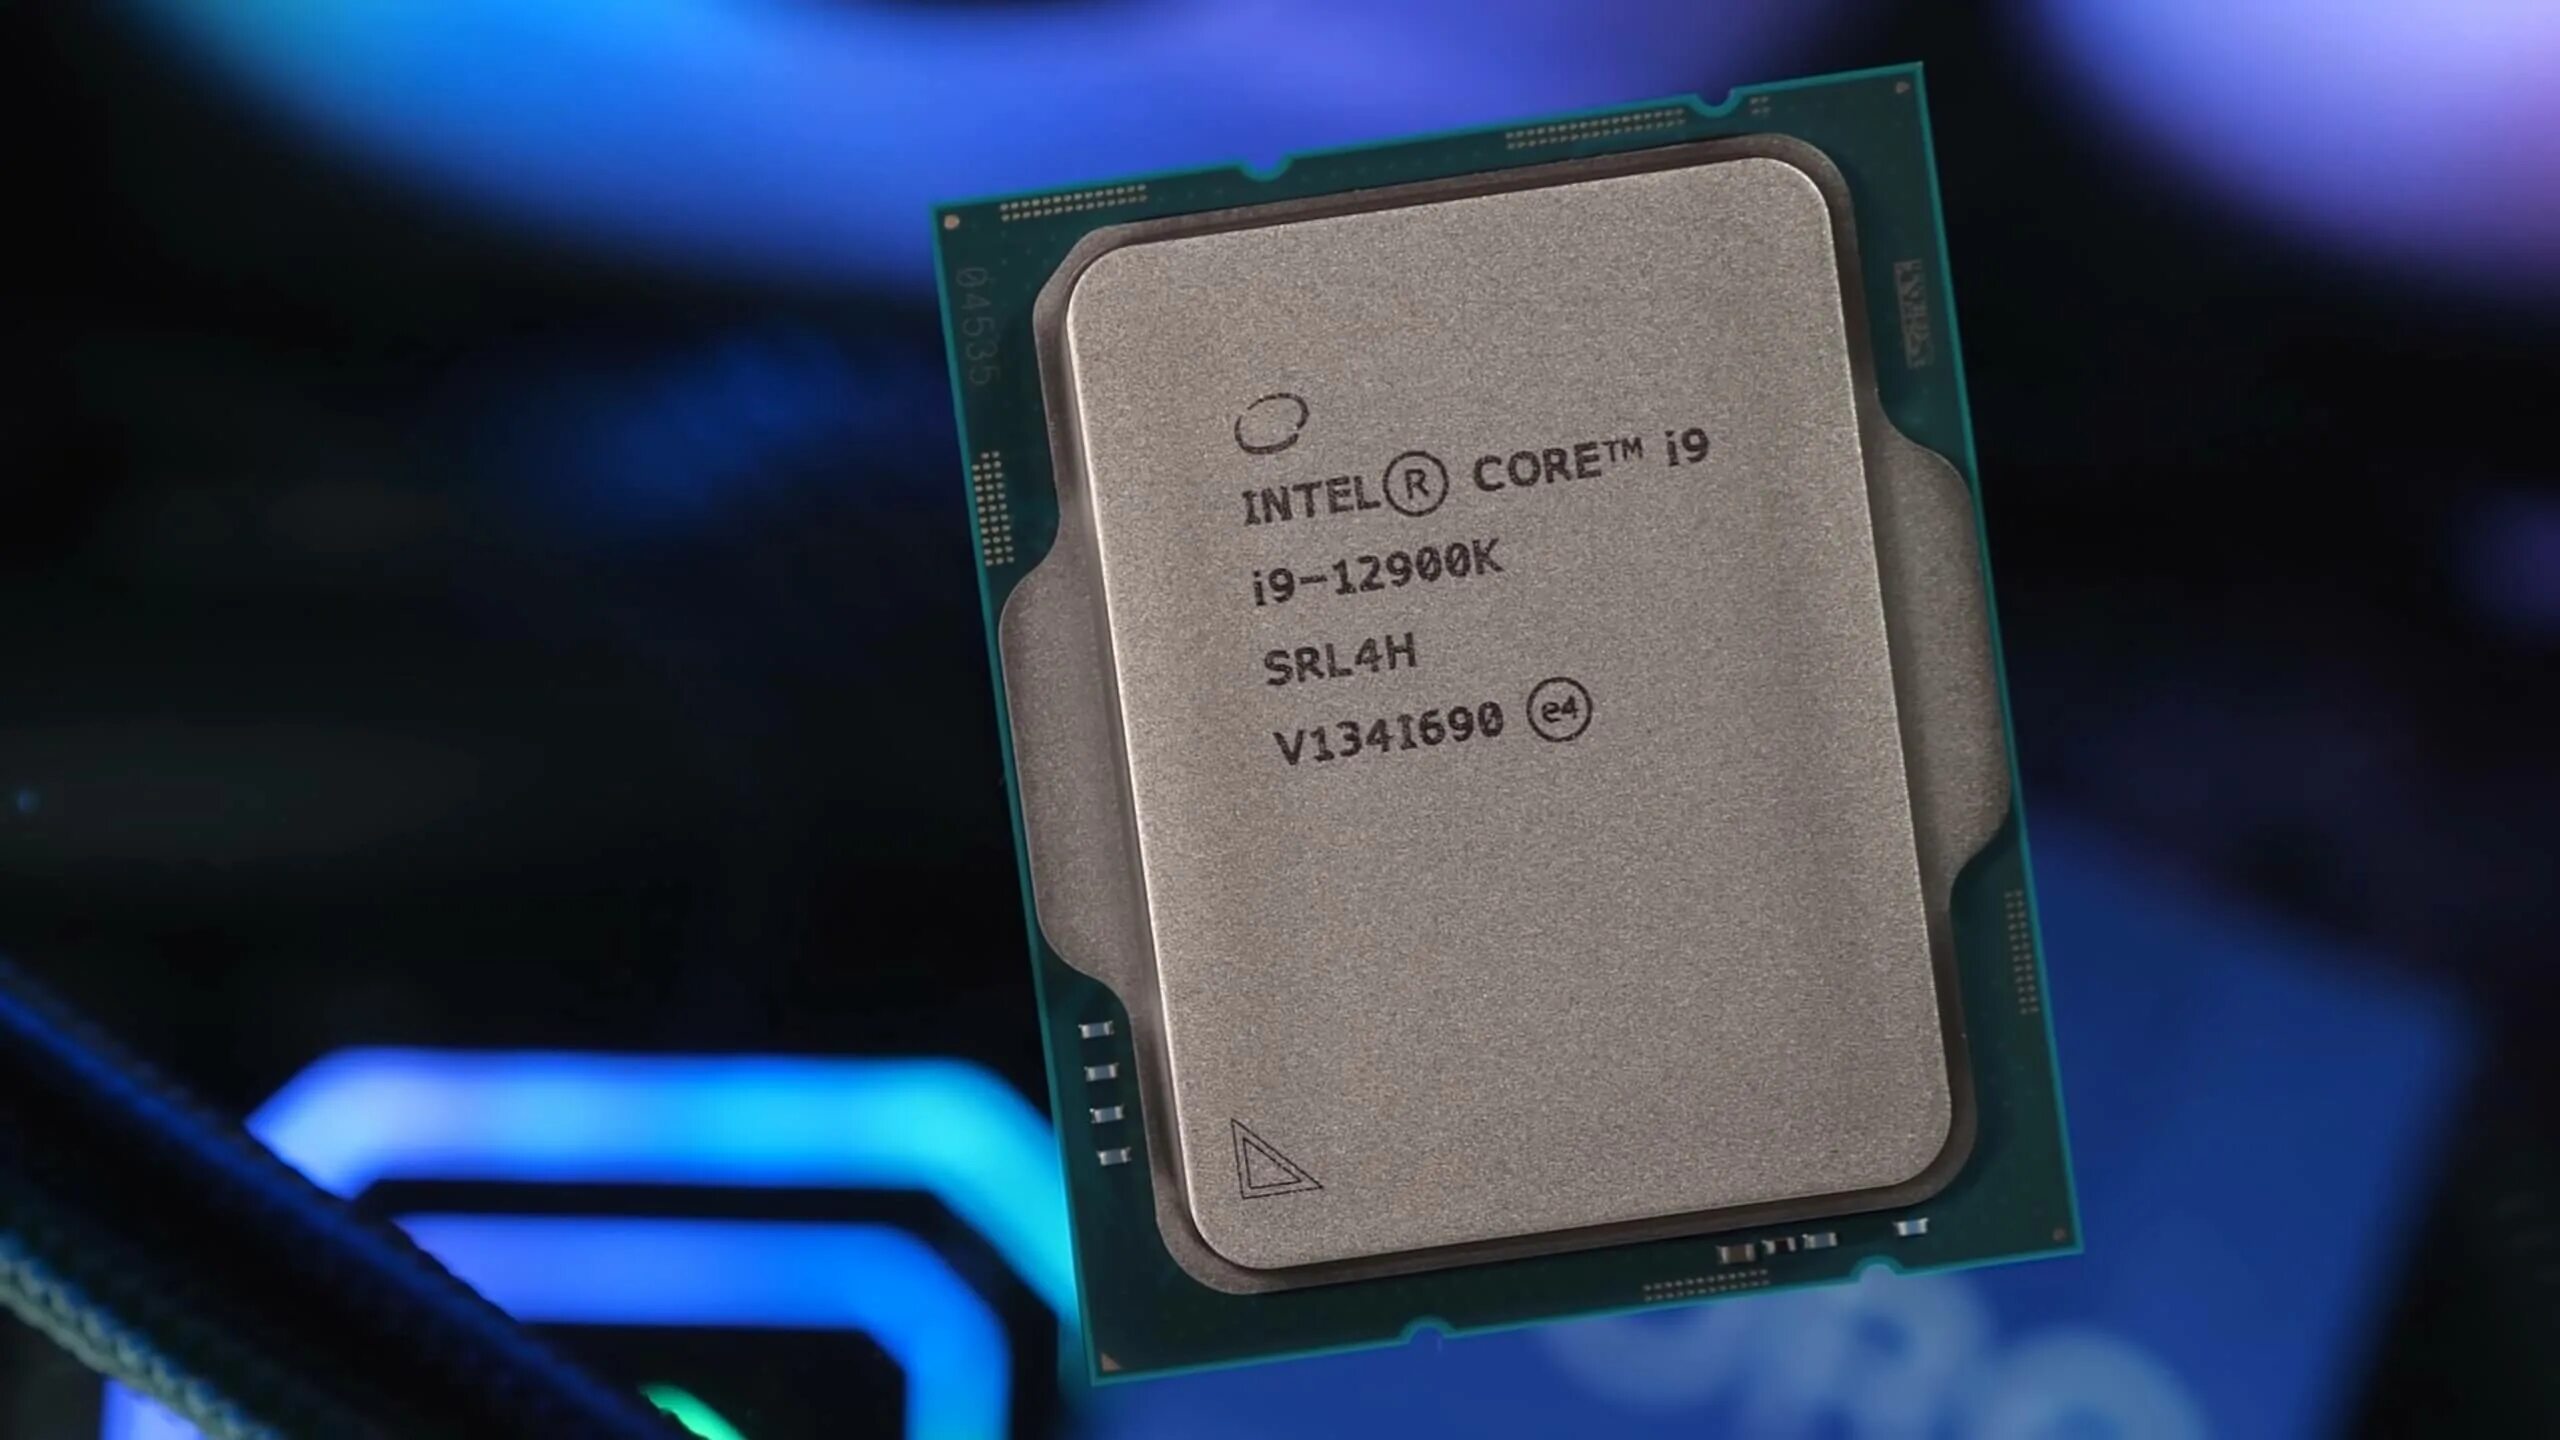 Интел k. Процессор i9 12900k. Intel Core i9 12900k. Intel Core i9-12900ks. Процессор Intel Core i9 12900k, LGA 1700, OEM.